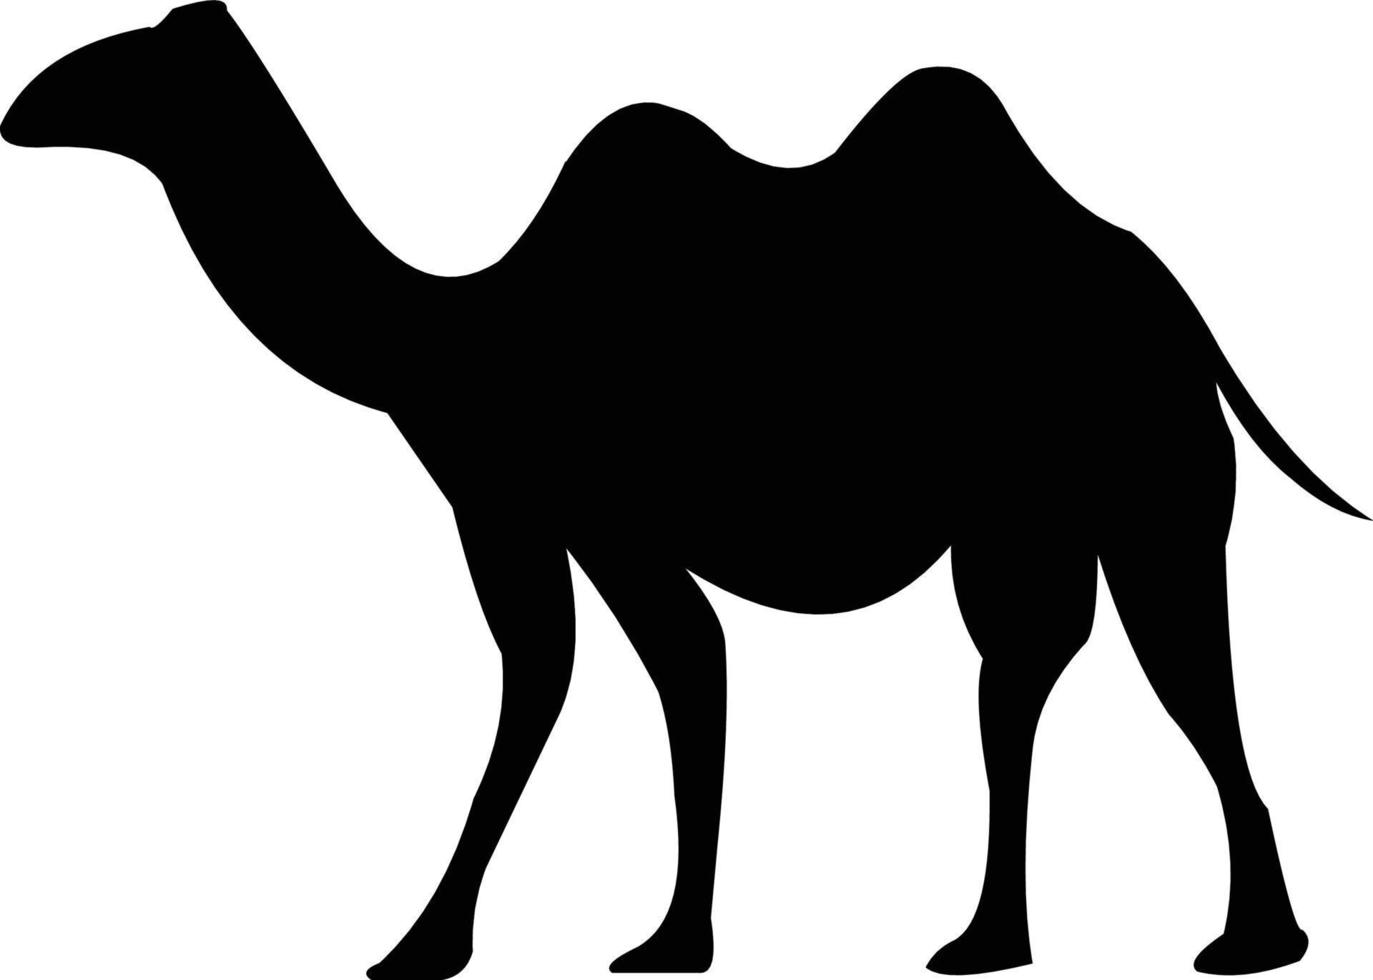 zwart-witte kameelvectorafbeeldingen die u naar behoefte kunt gebruiken vector